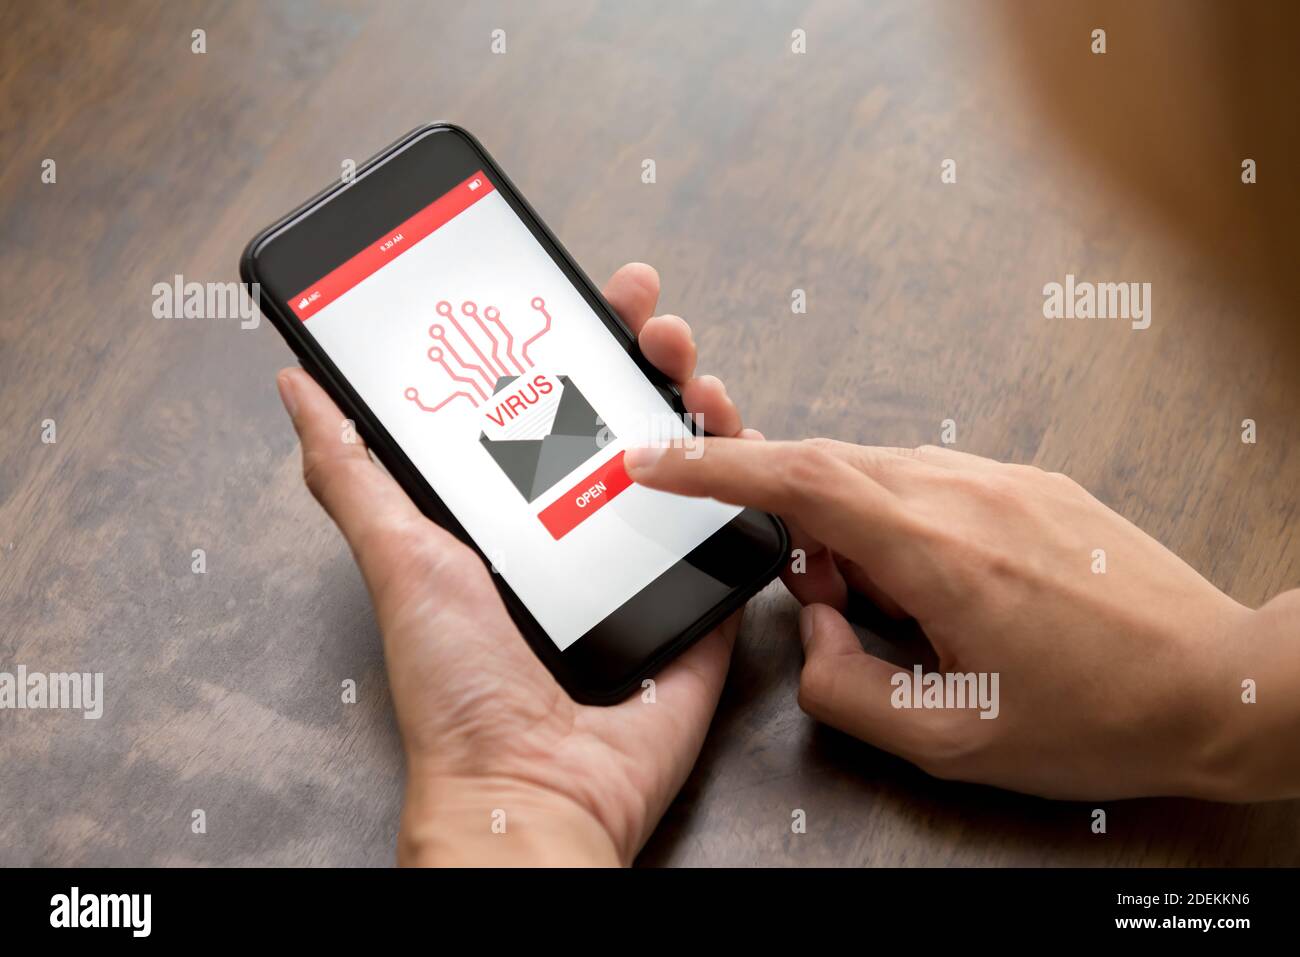 Toccare manualmente il pulsante sullo schermo dello smartphone per aprire la posta elettronica contiene virus Foto Stock